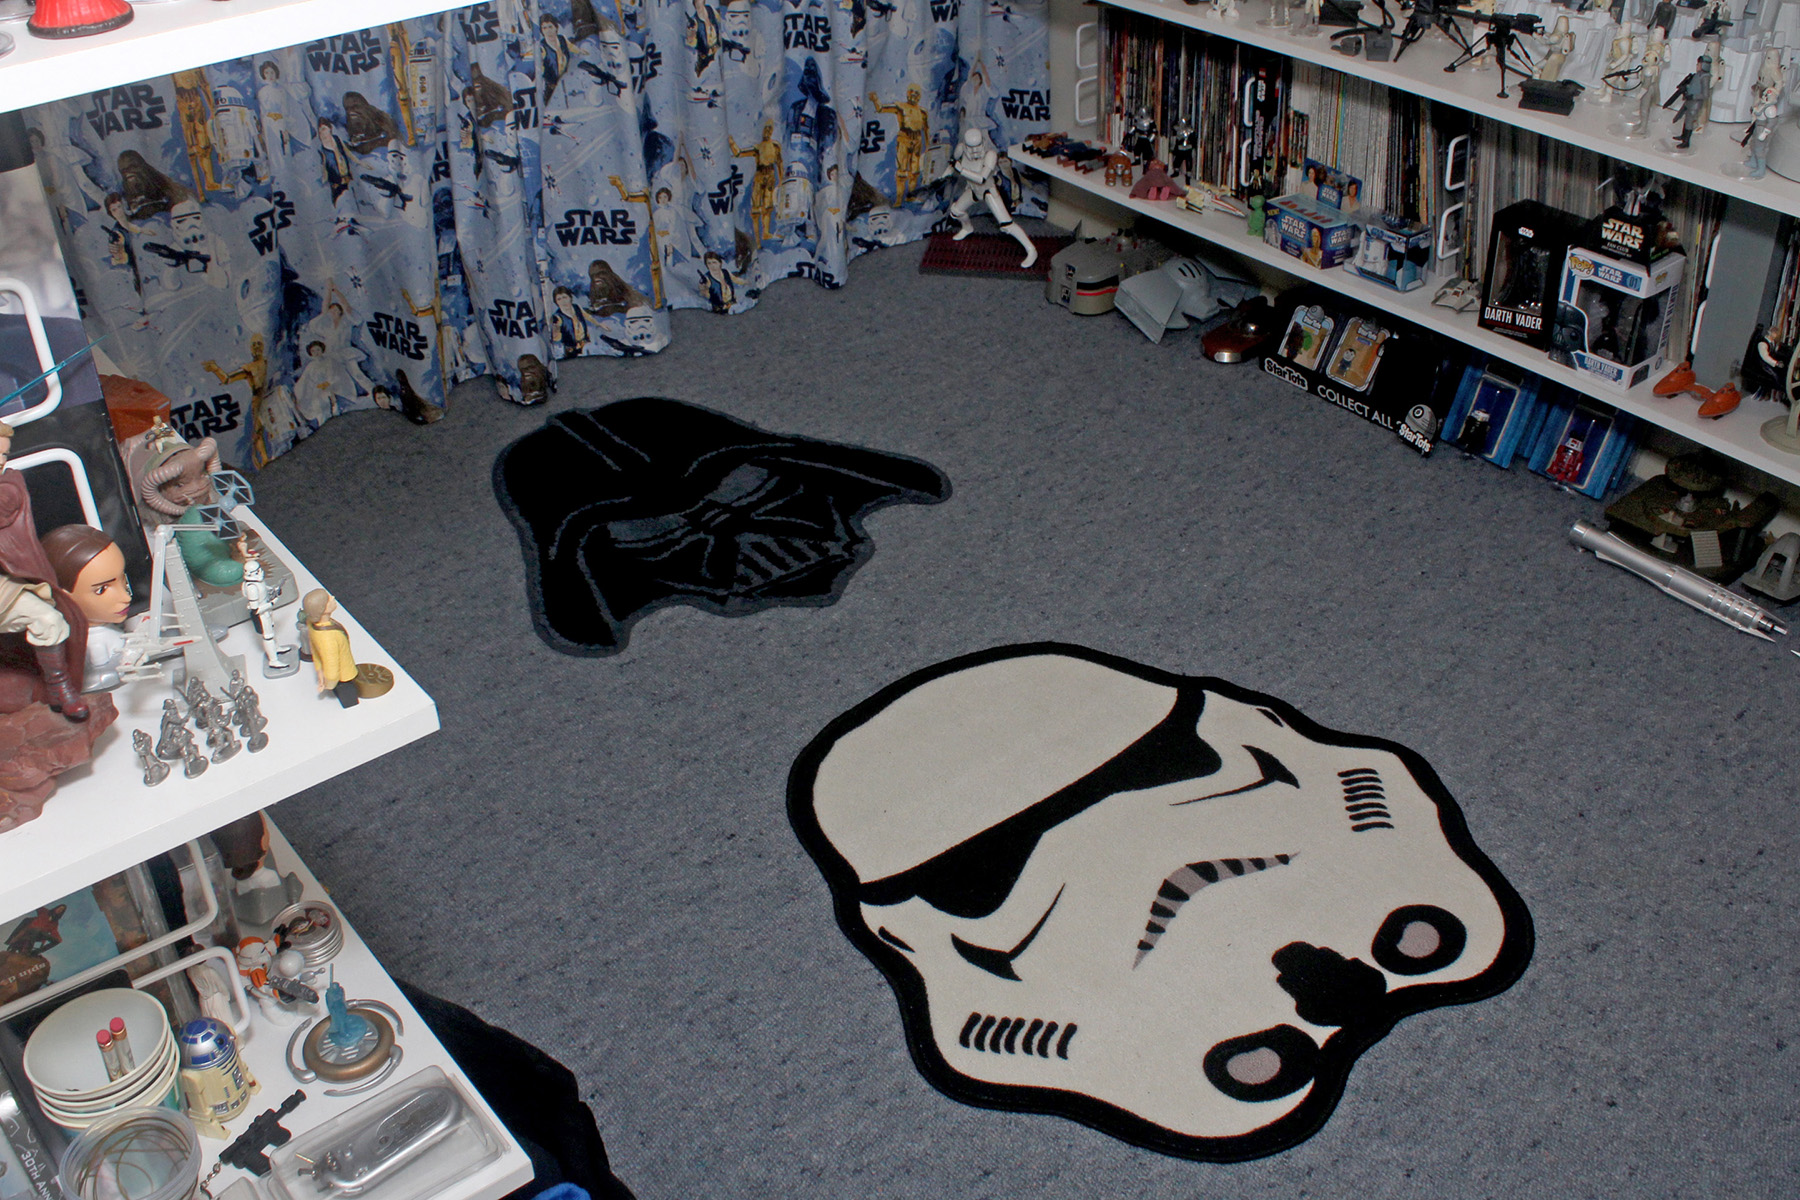 Star Wars rugs